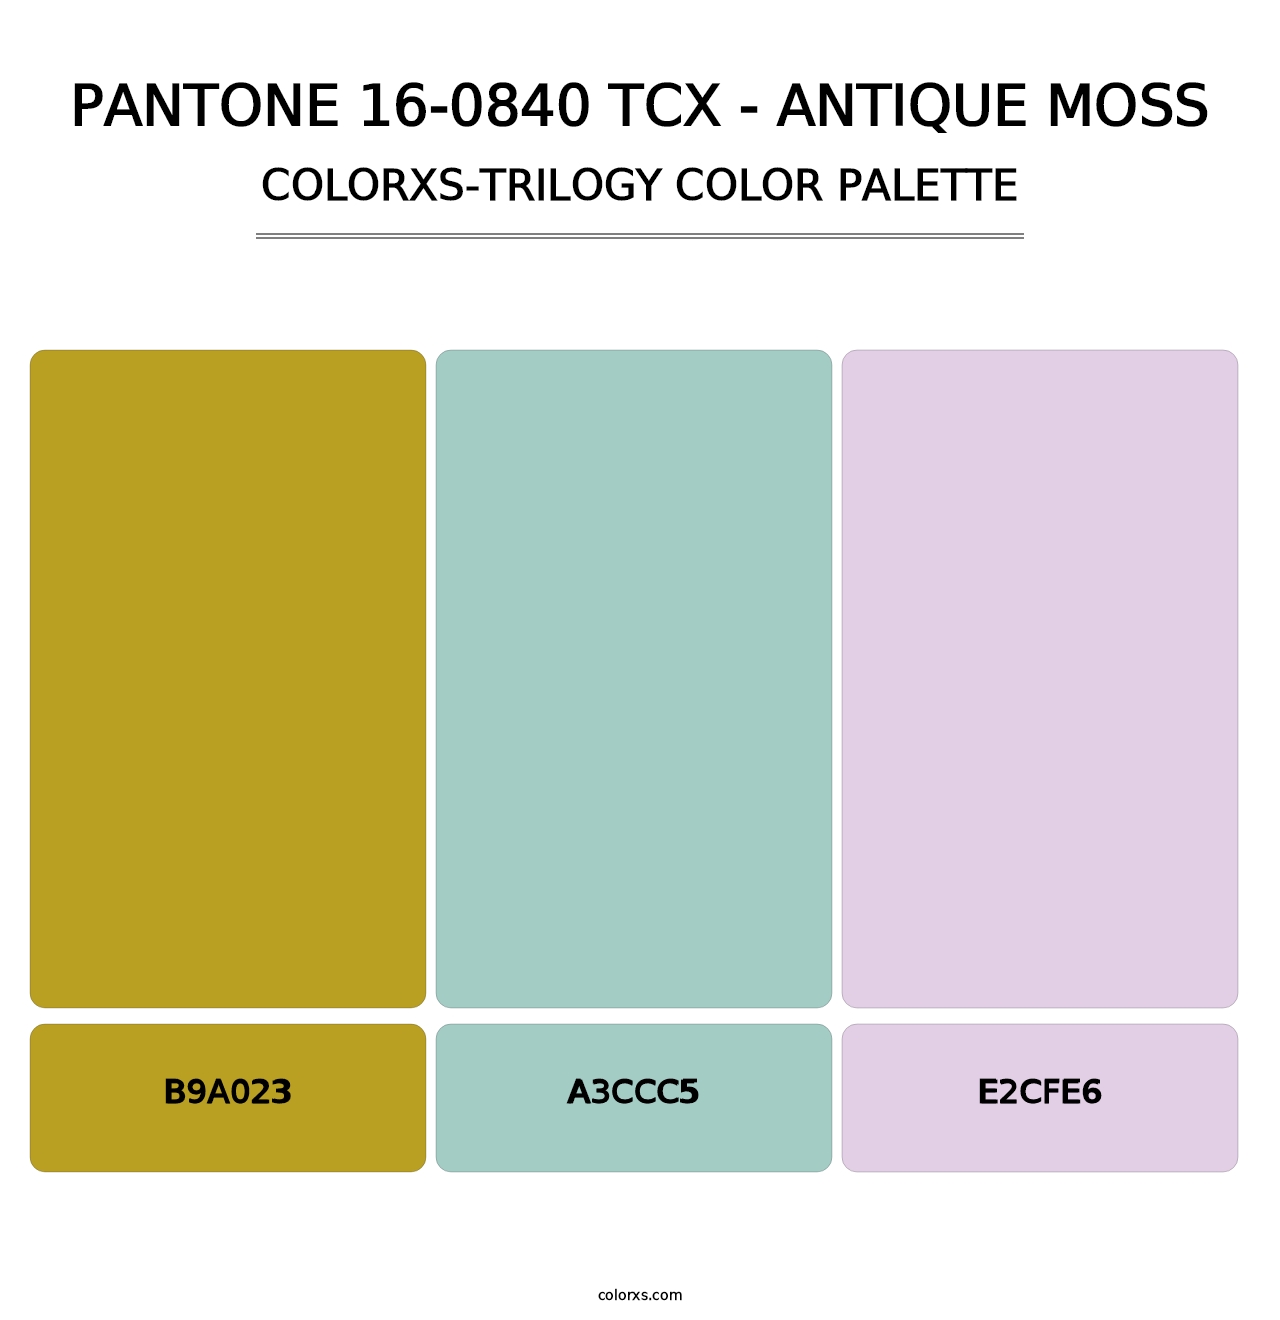 PANTONE 16-0840 TCX - Antique Moss - Colorxs Trilogy Palette